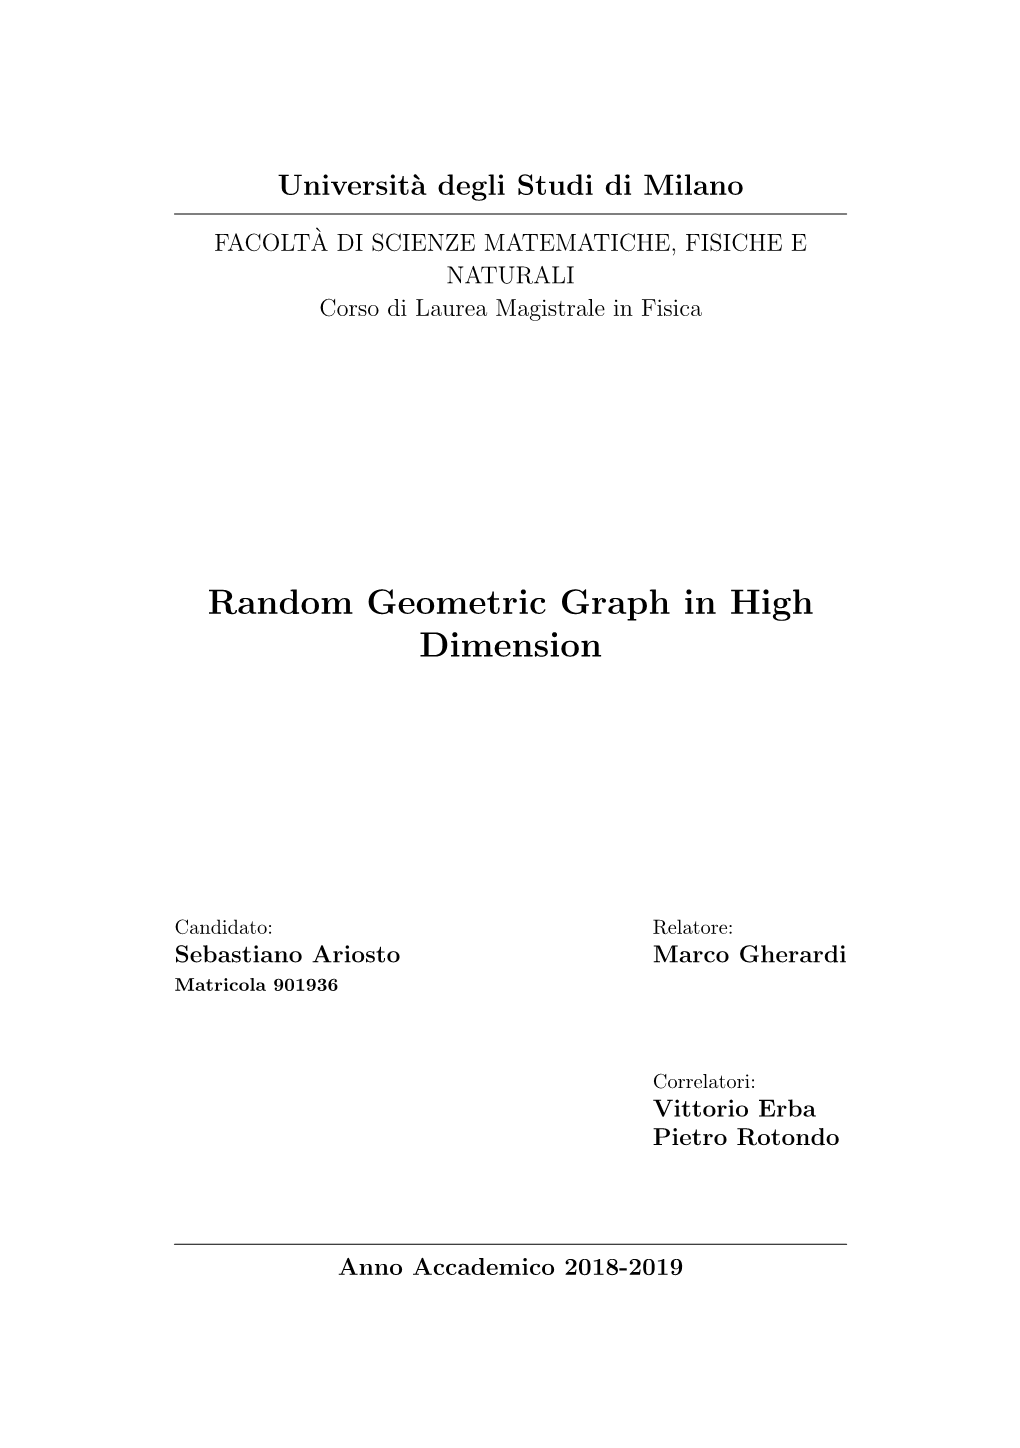 Random Geometric Graph in High Dimension